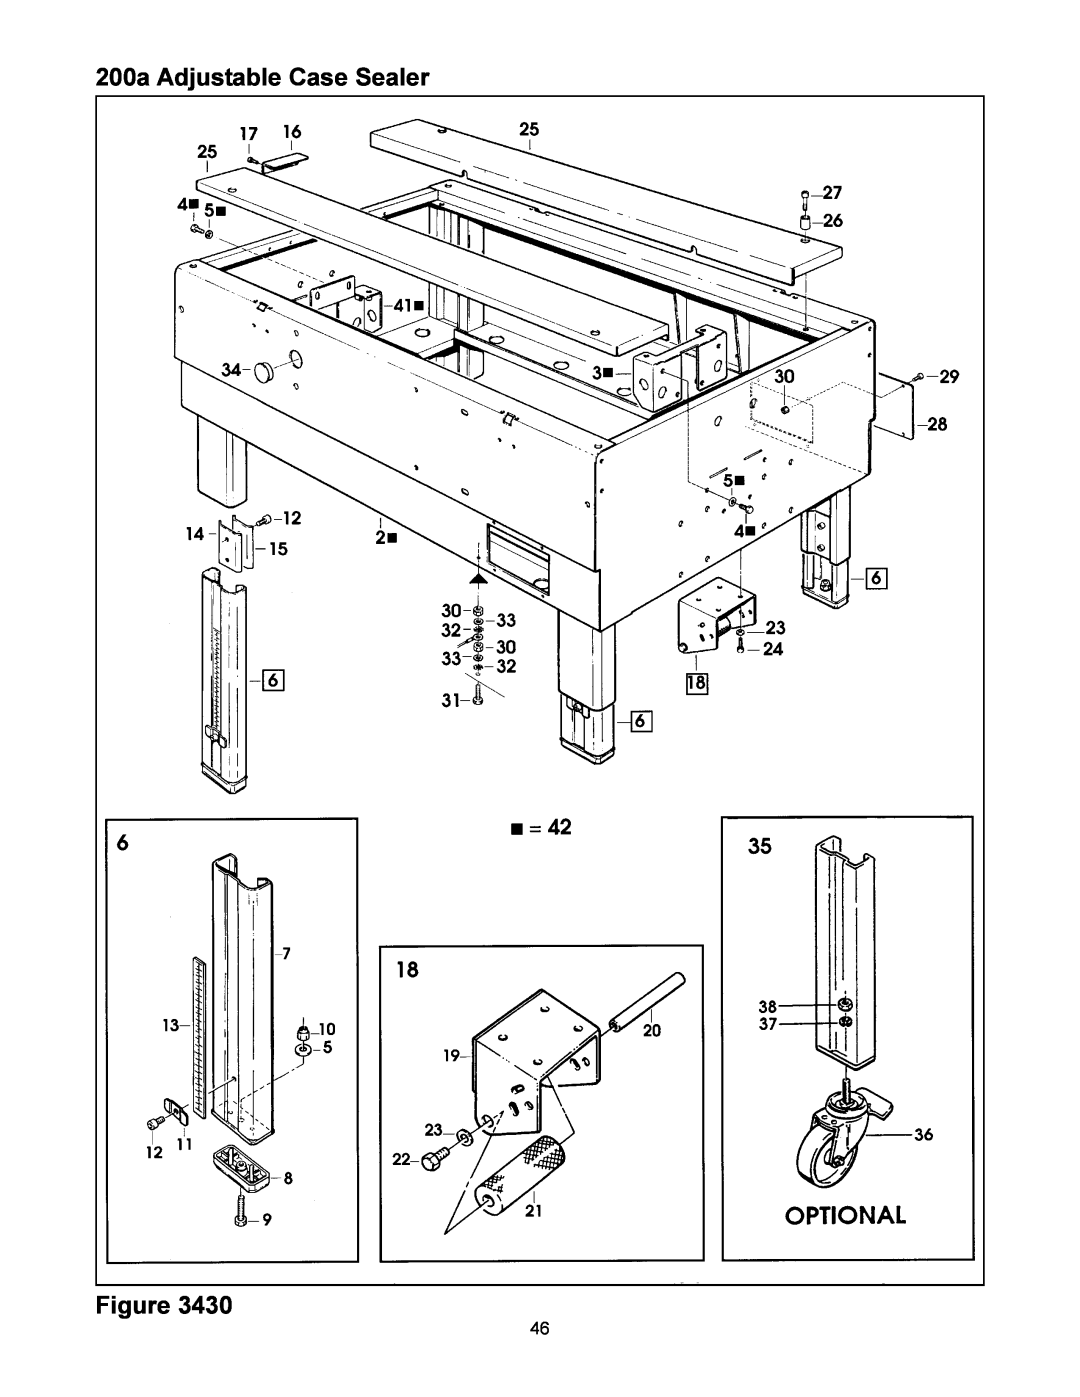 3M manual 200a Adjustable Case Sealer 